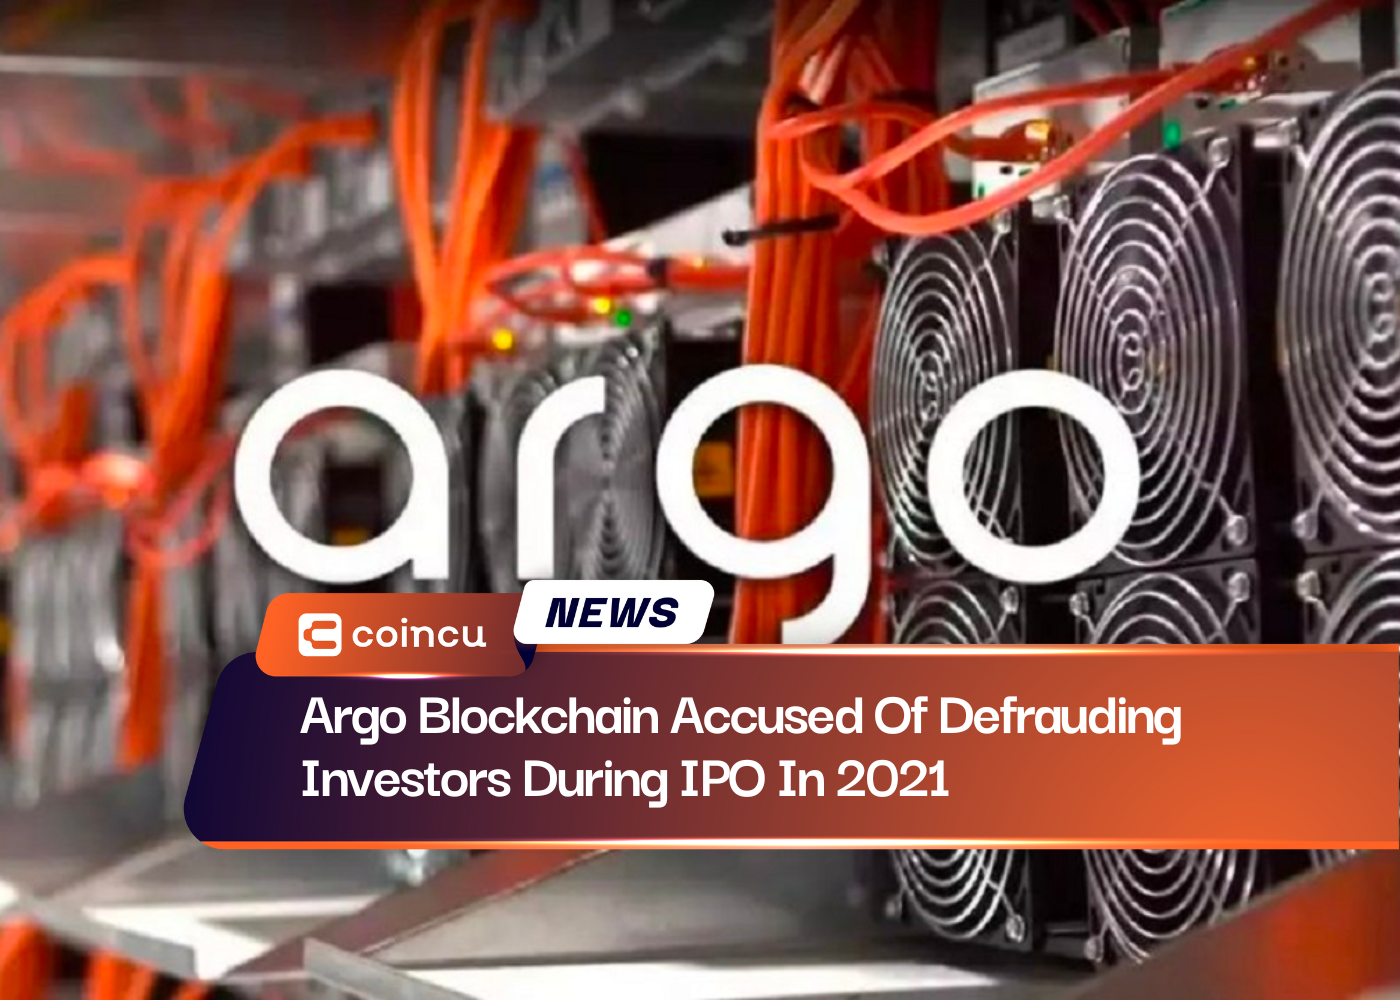 Argo Blockchain Accused Of Defrauding Investors During IPO In 2021